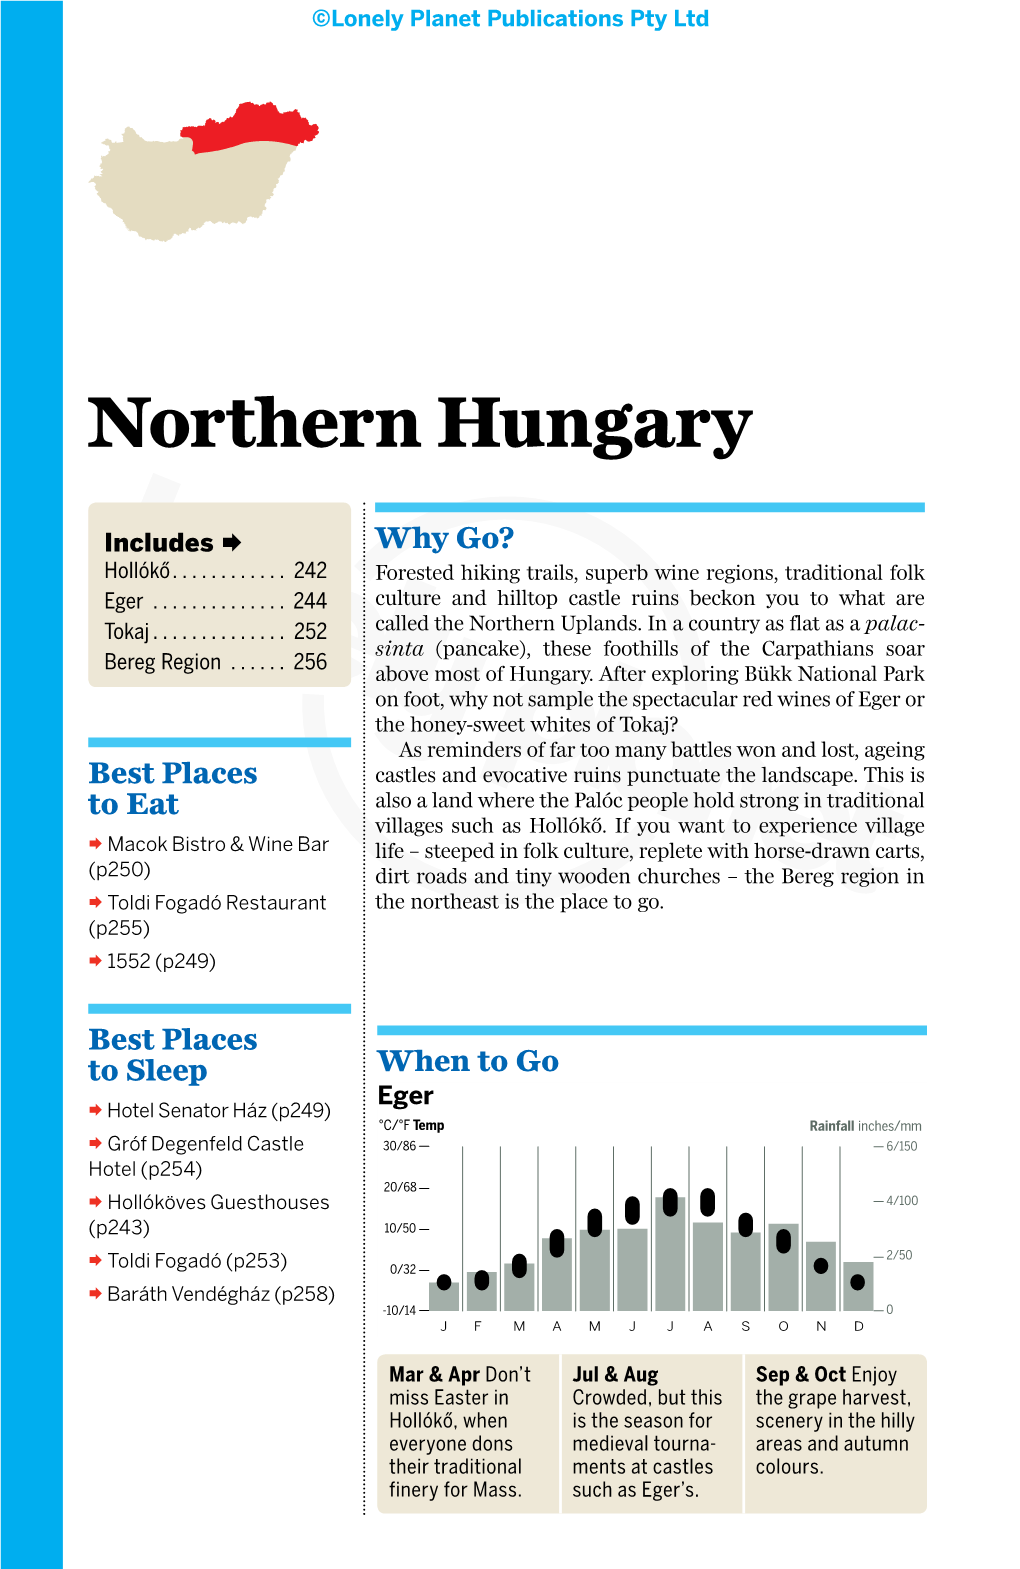 Northern Hungary